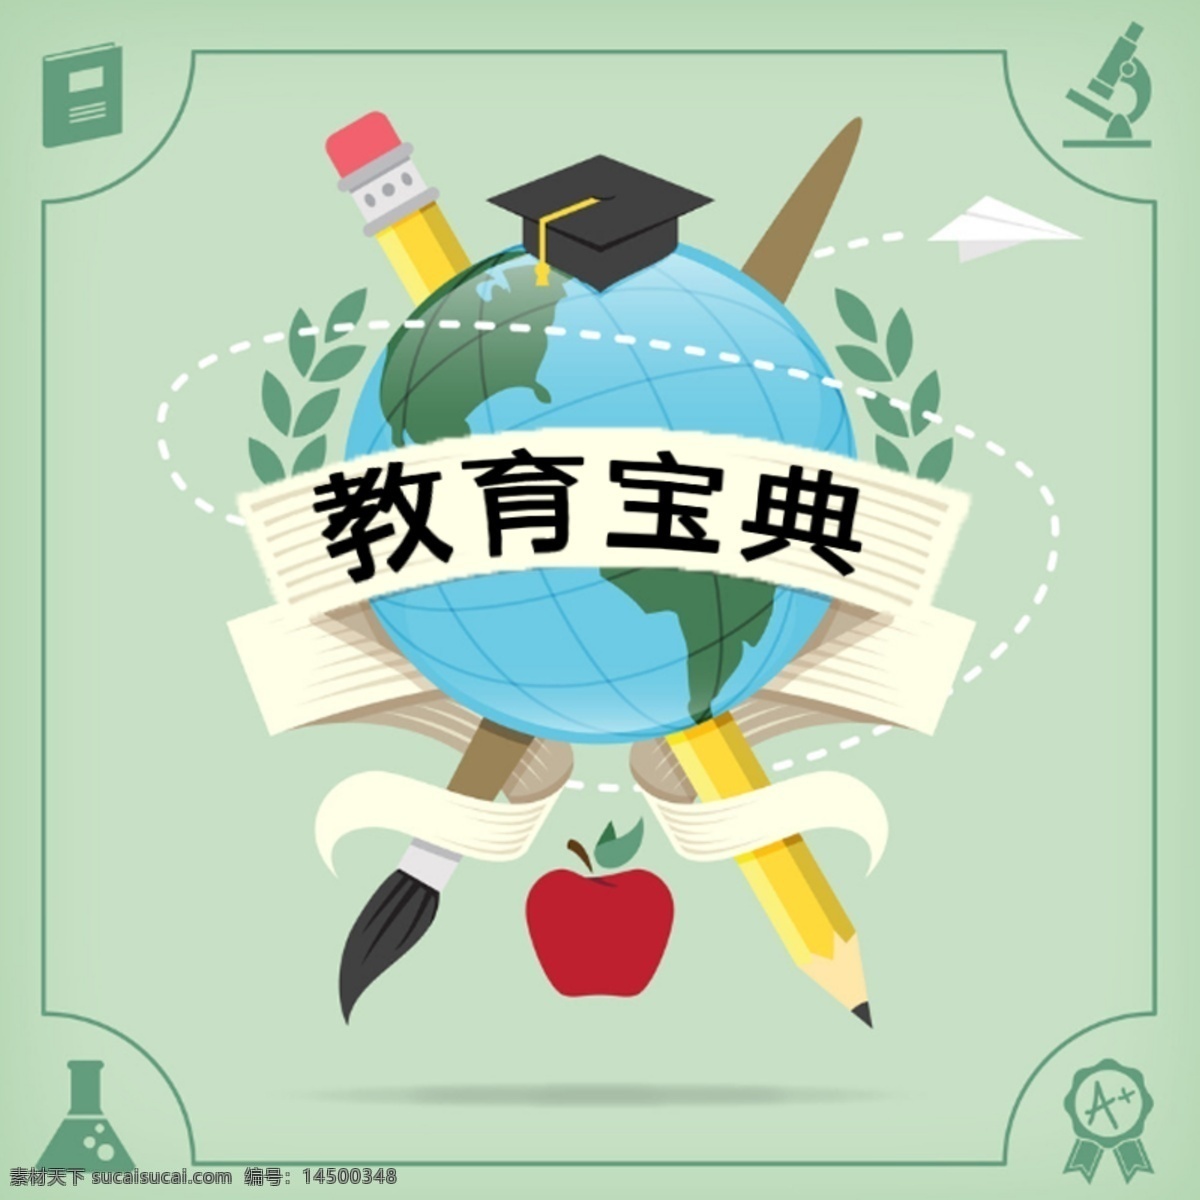 教育 宝典 logo 媒体 应用 搜狐 uc 订阅 号 微 信 公众 企鹅 等等 可随意换文字 白色